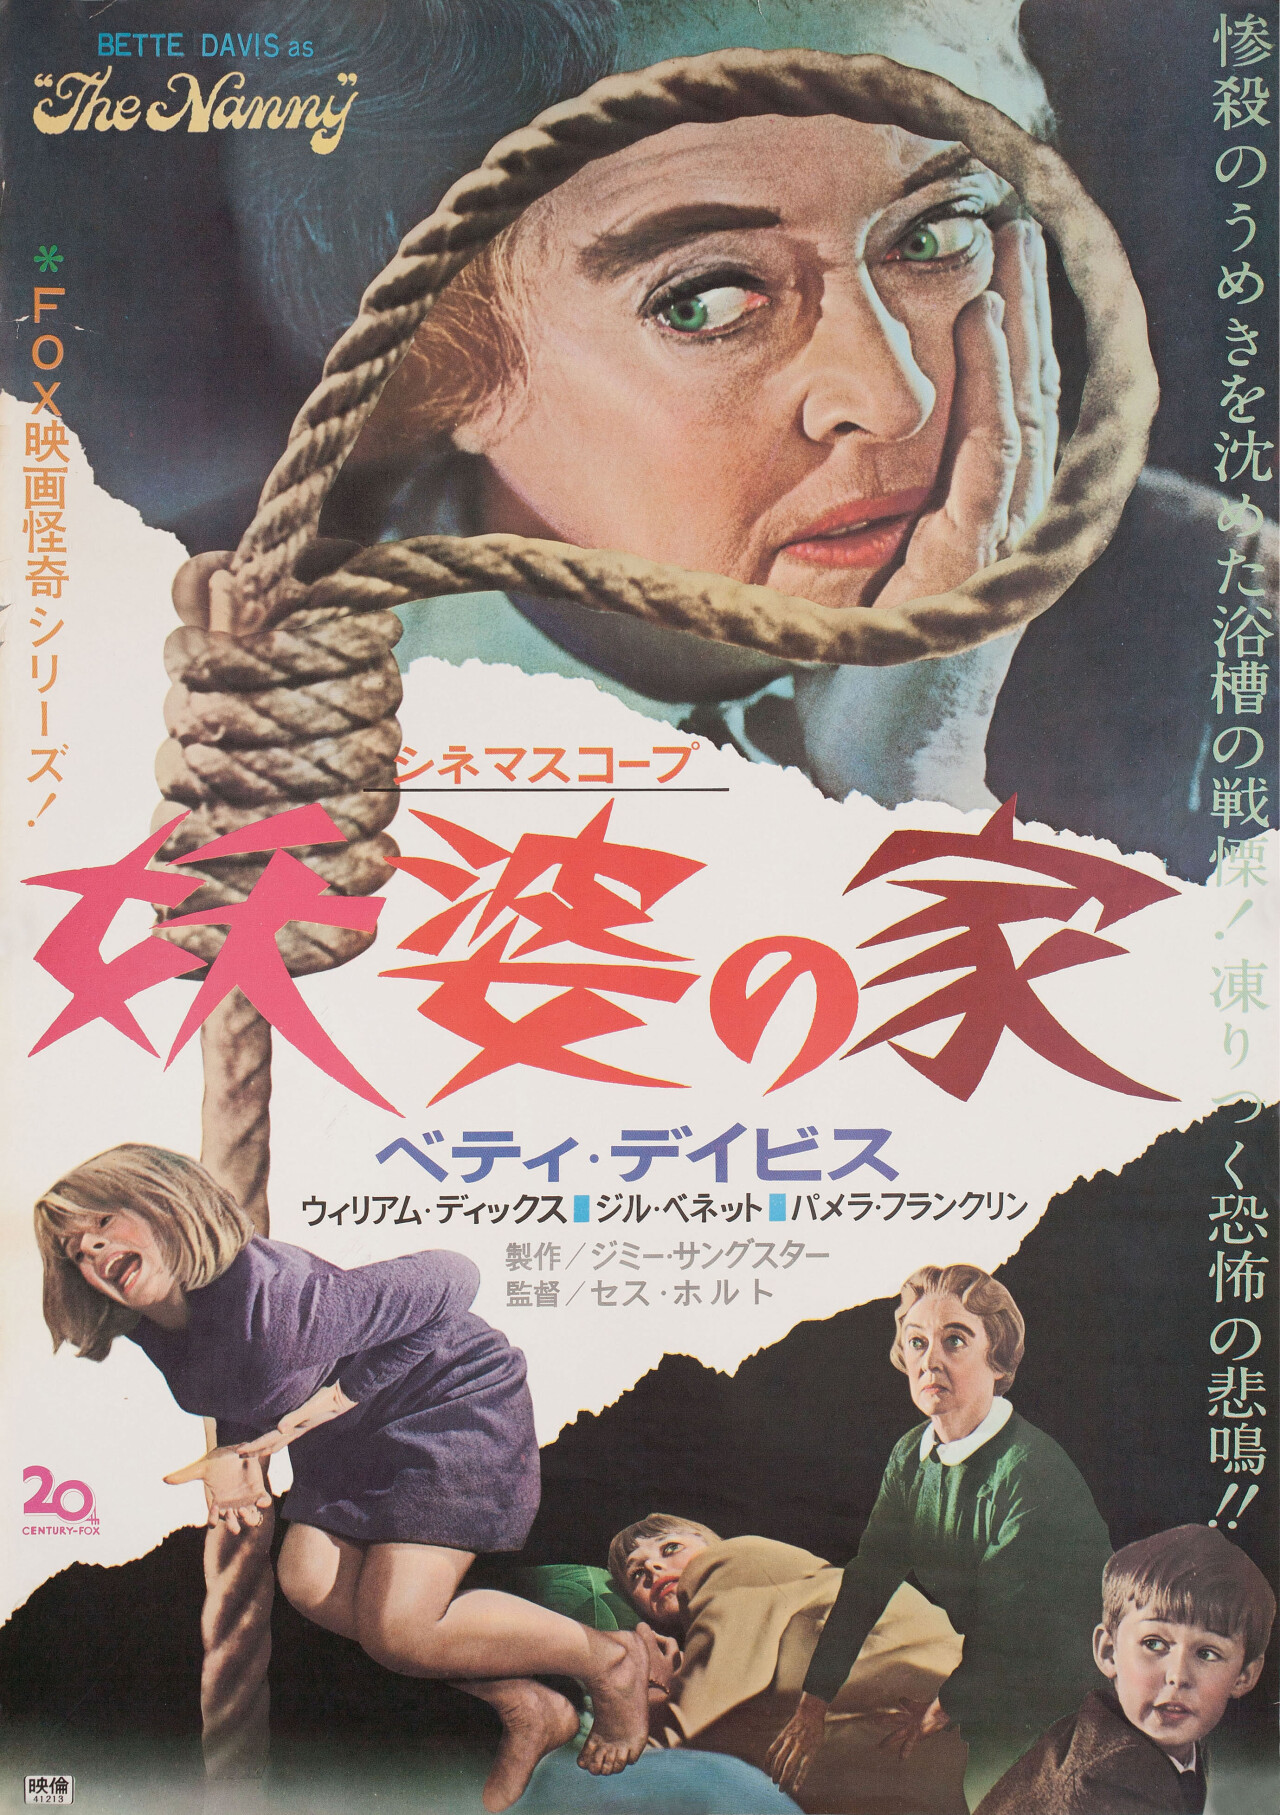 Няня (The Nanny, 1965), режиссёр Сет Холт, японский постер к фильму (Hummer horror, 1966 год)